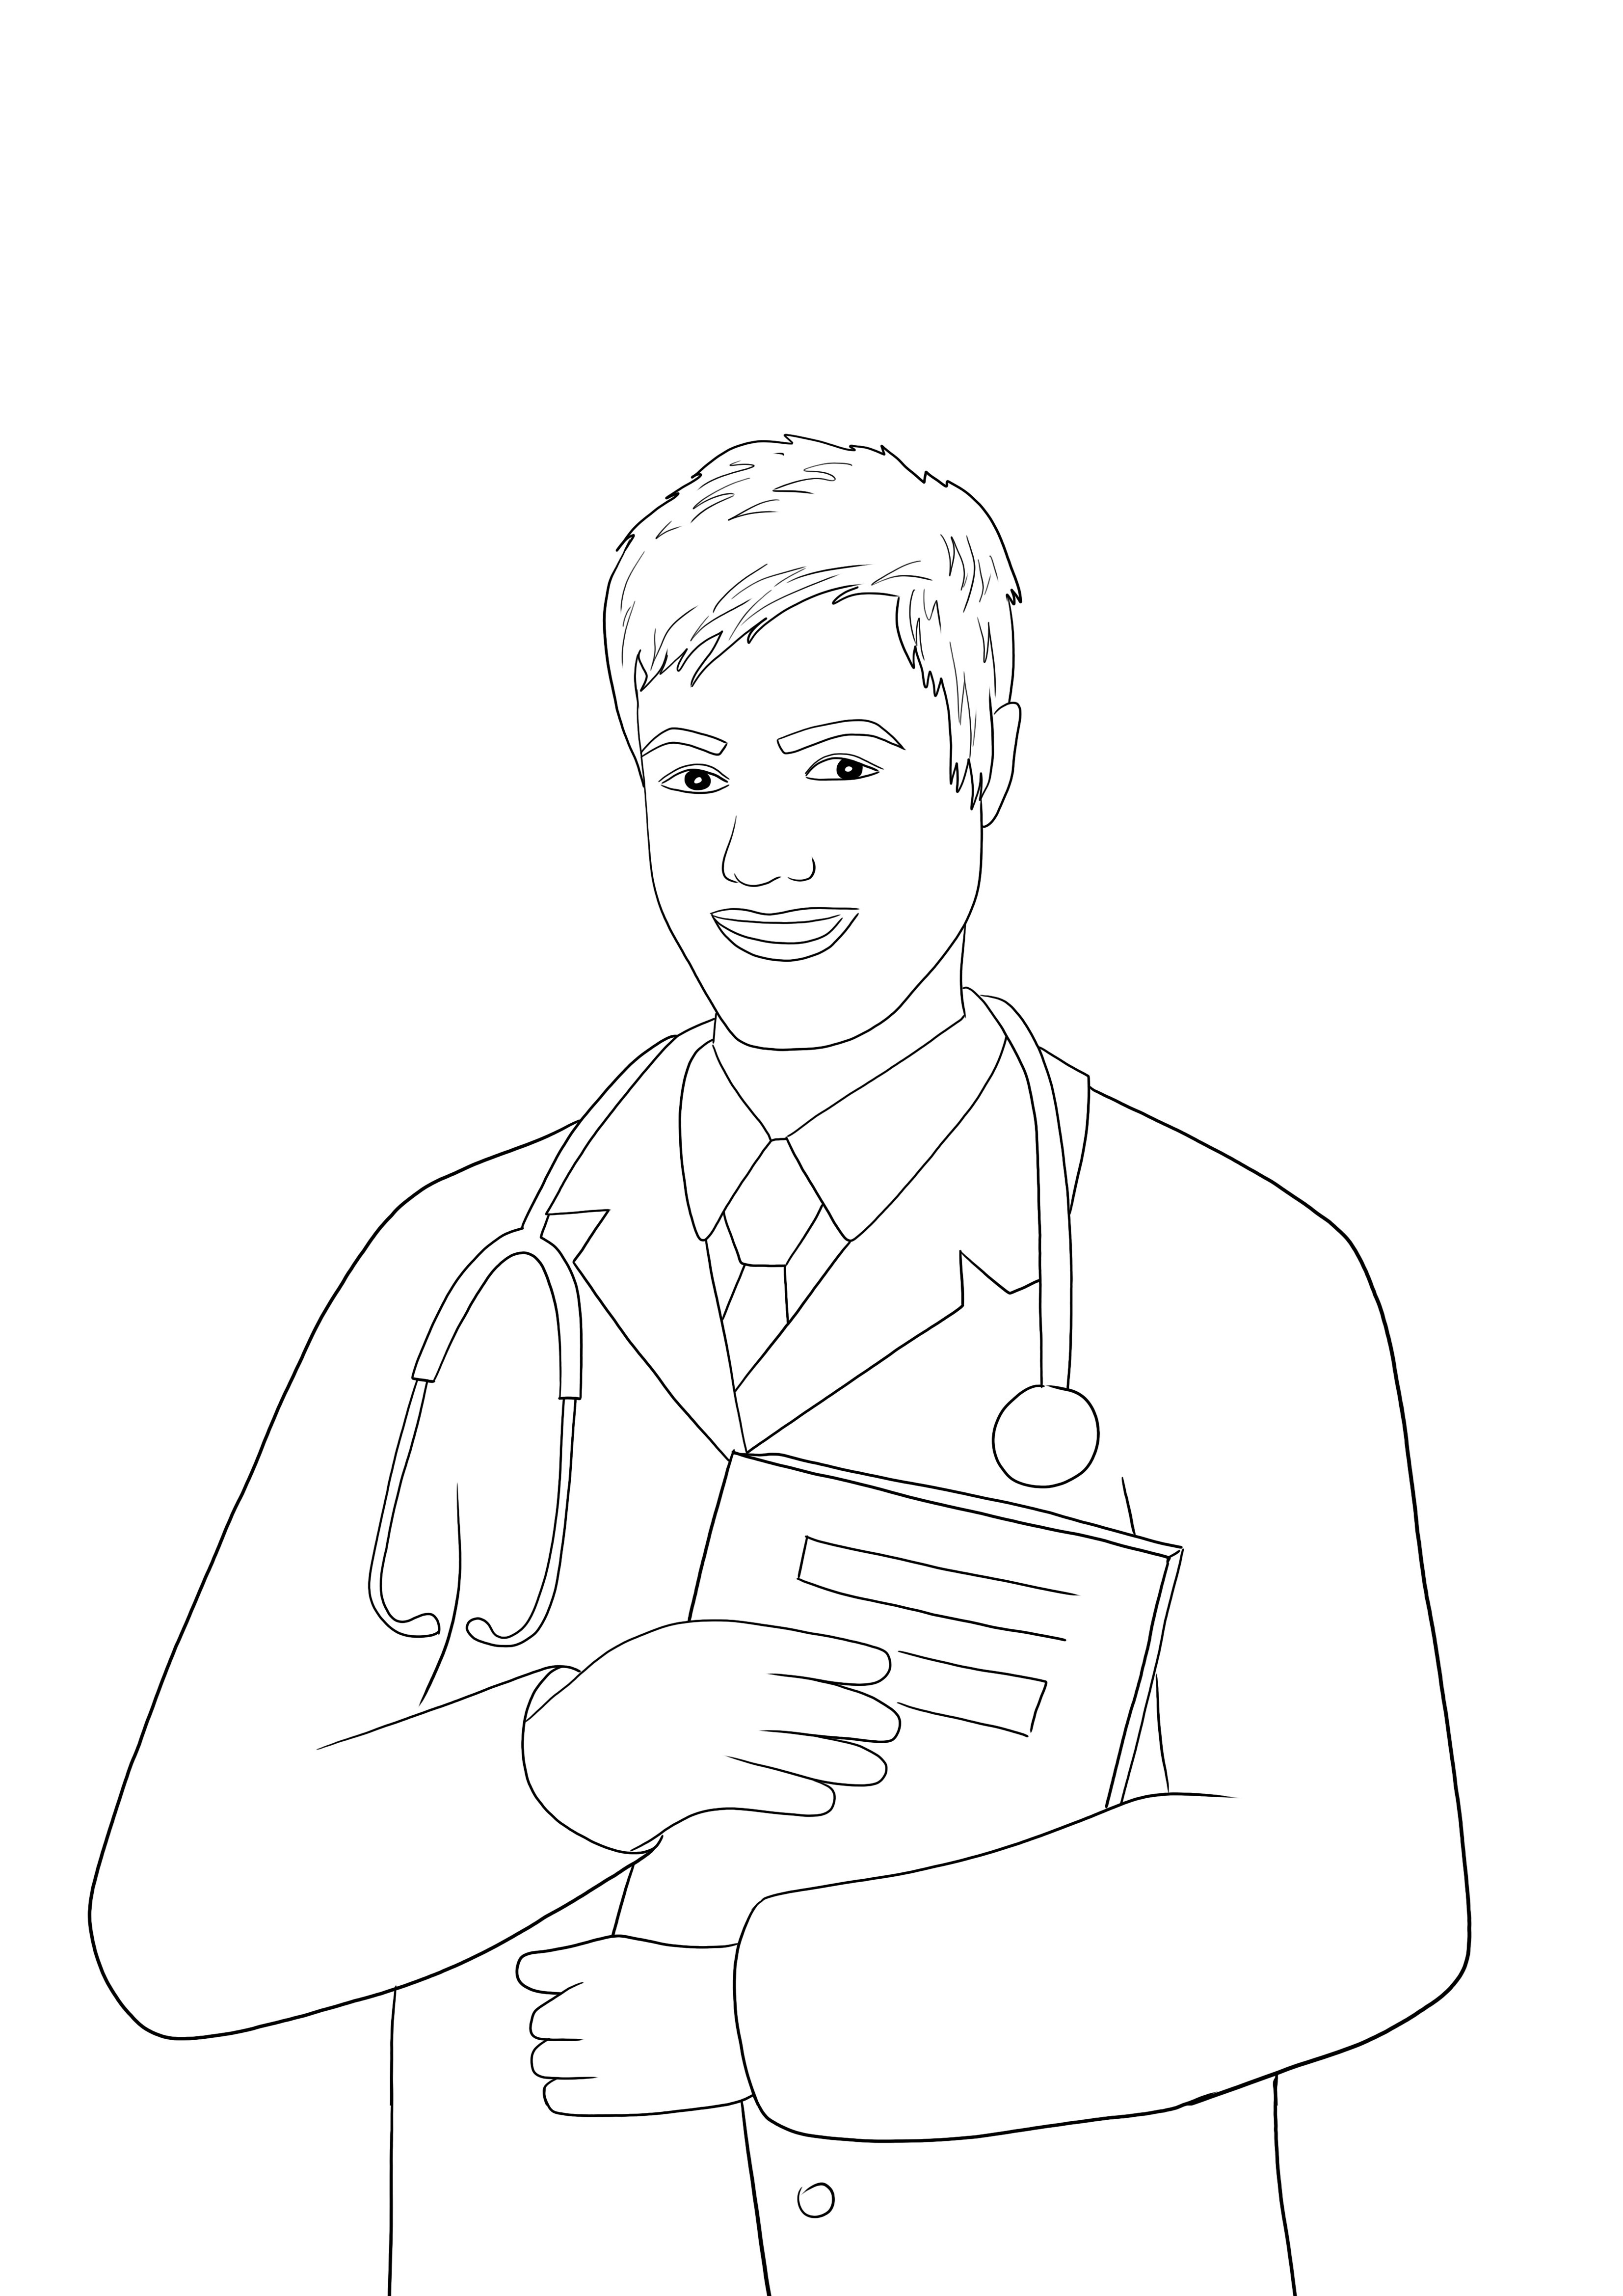 Ein kostenloses druckbares Ausmalbild eines Arztes, um über Berufe zu unterrichten